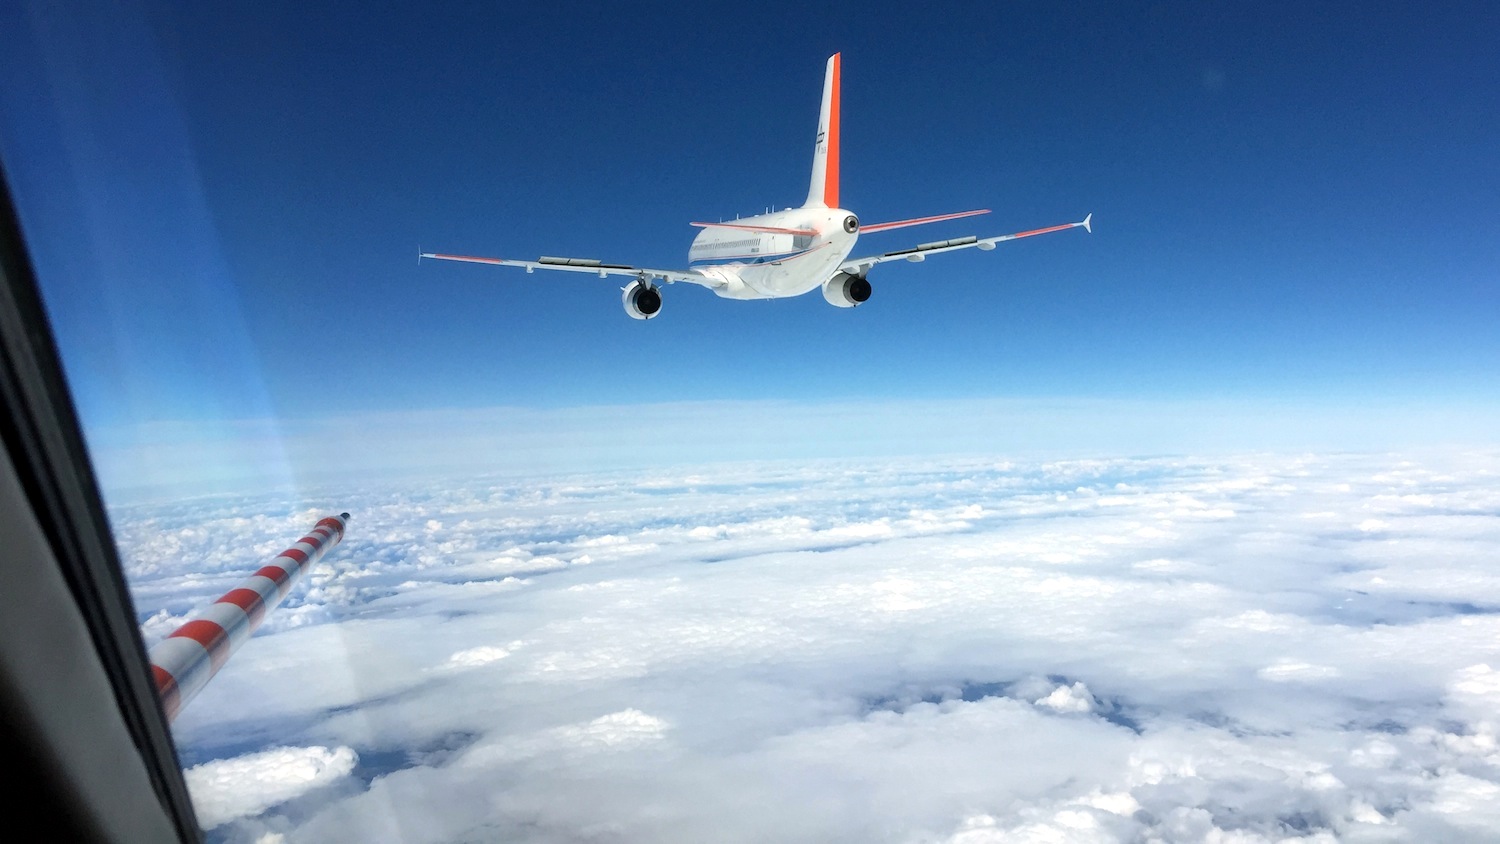 Blick aus der Falcon: Das Forschungsflugzeug verfolgt den zweistrahligen Airbus A320 Atra, der abwechselnd mit verschiedenen Treibstoffen fliegt. 